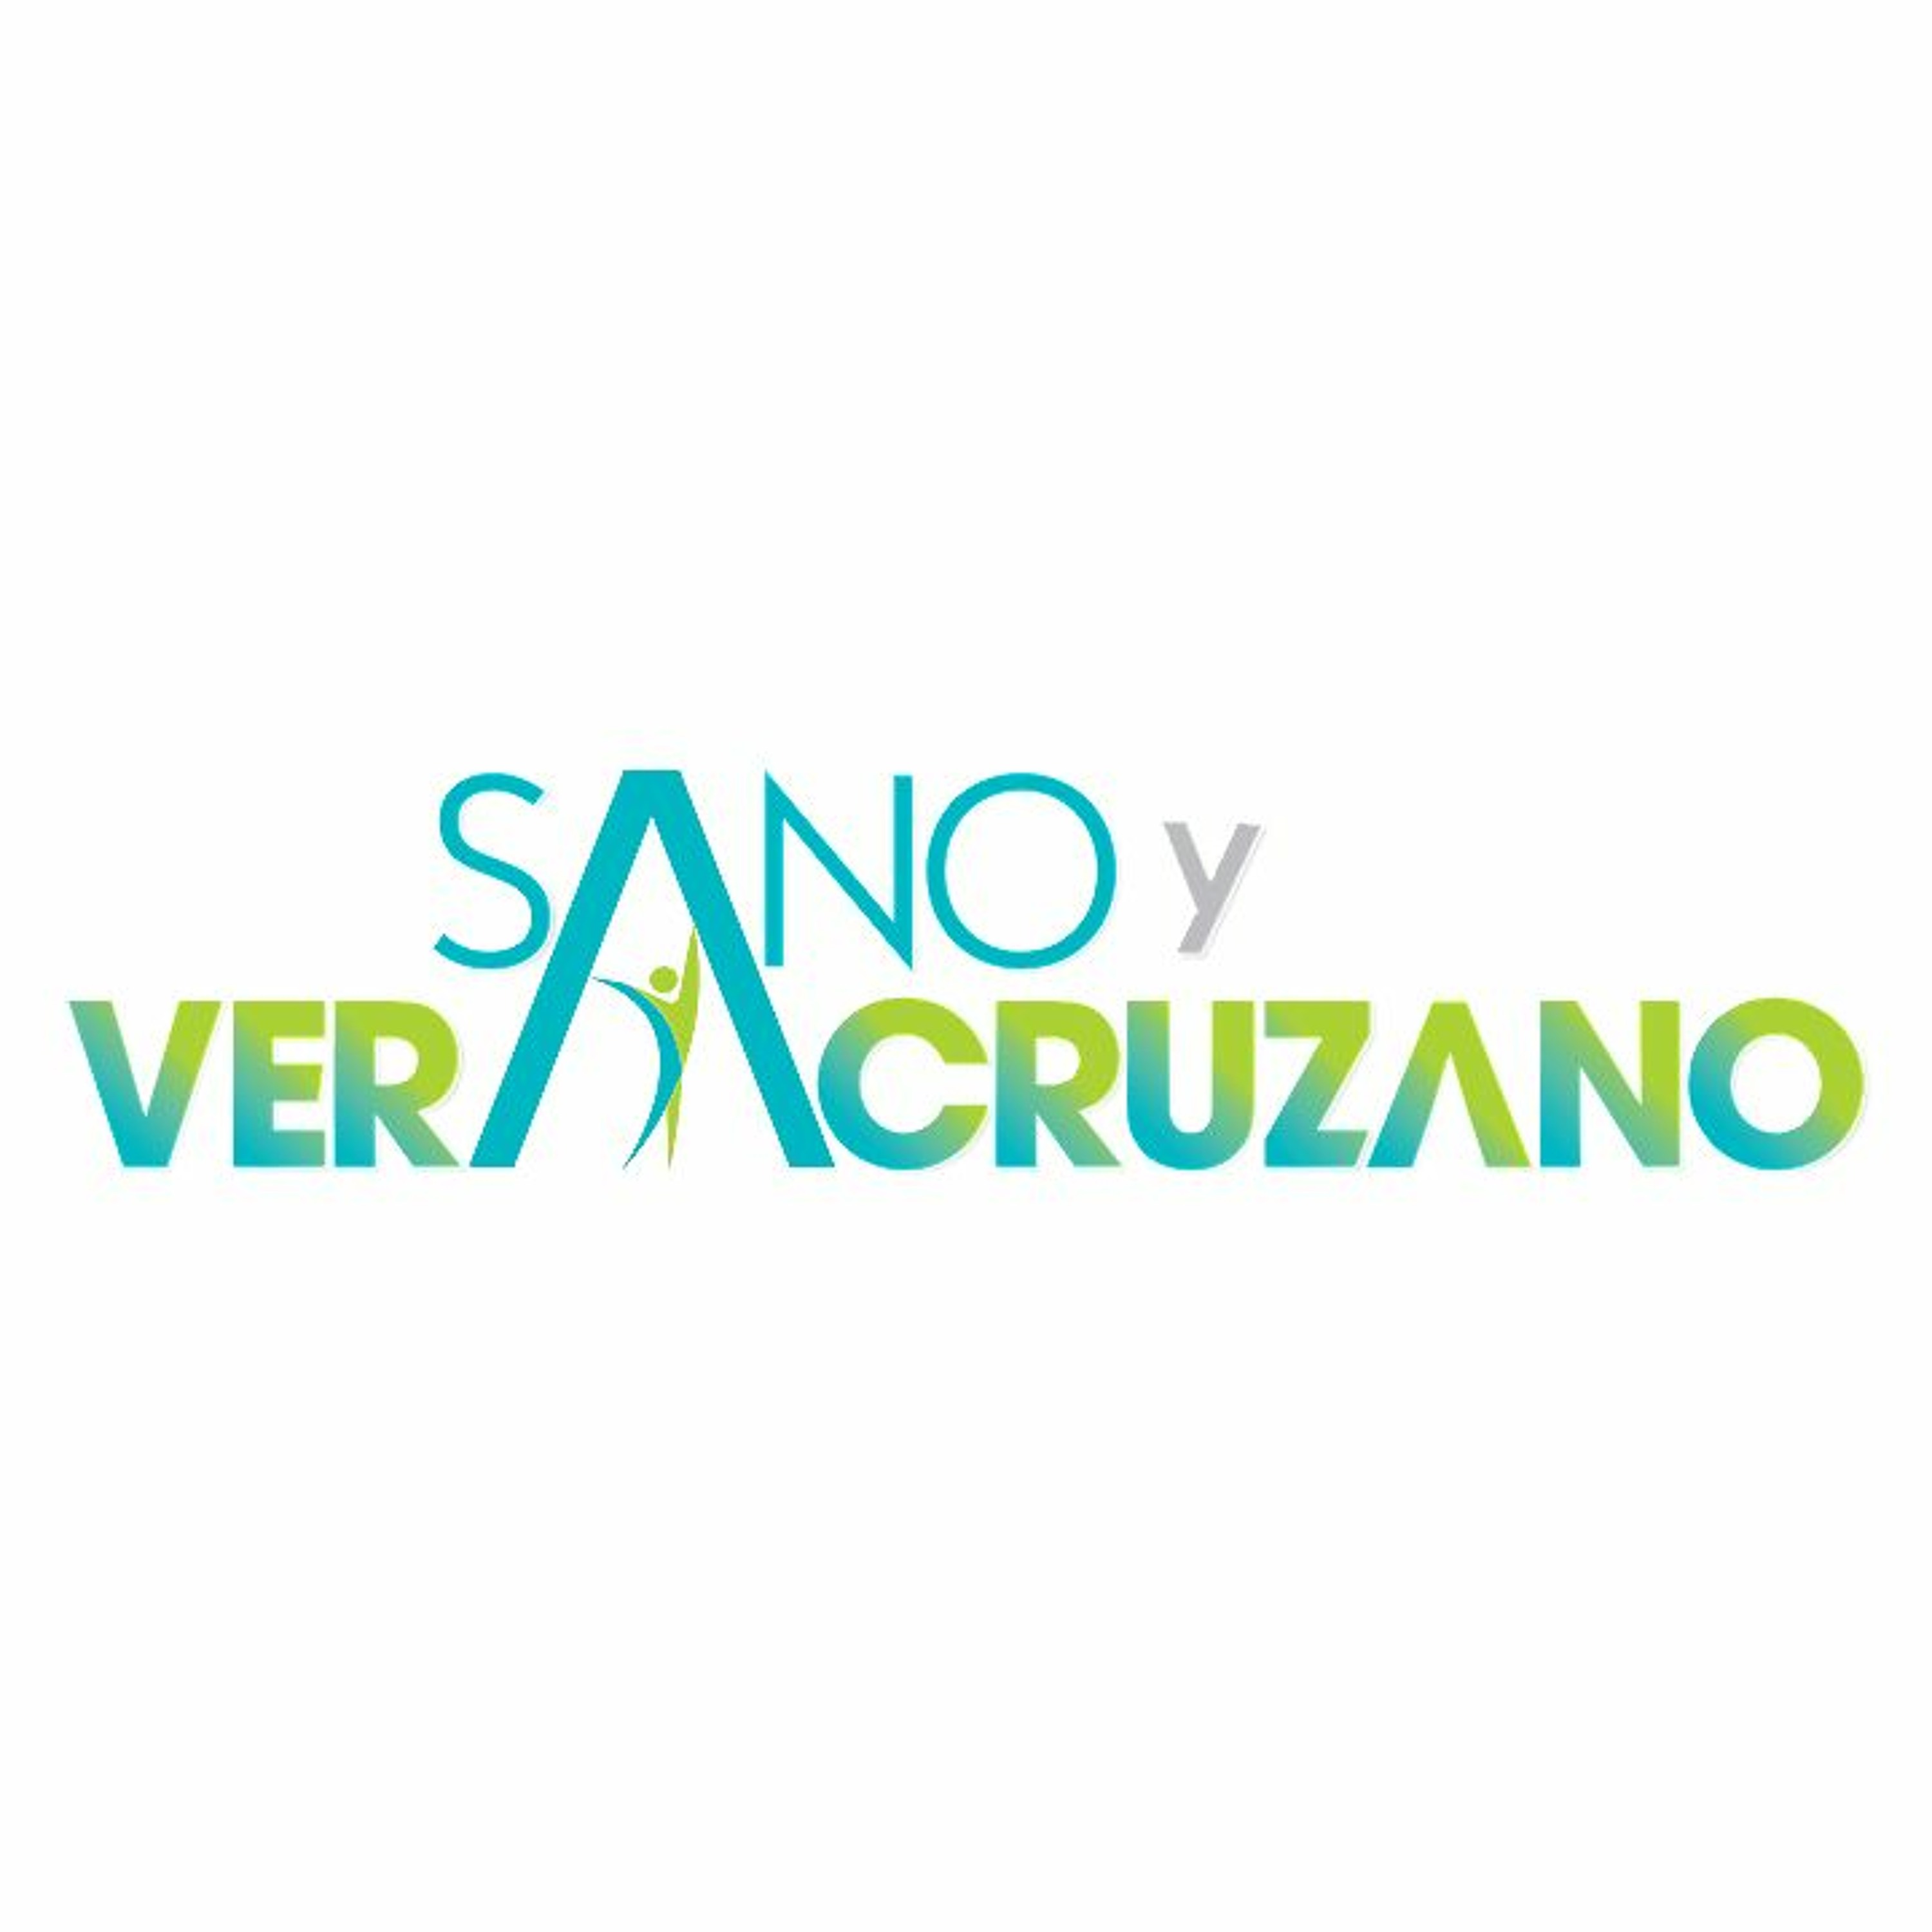 Sano y Veracruzano - Día Mundial Sin Tabaco